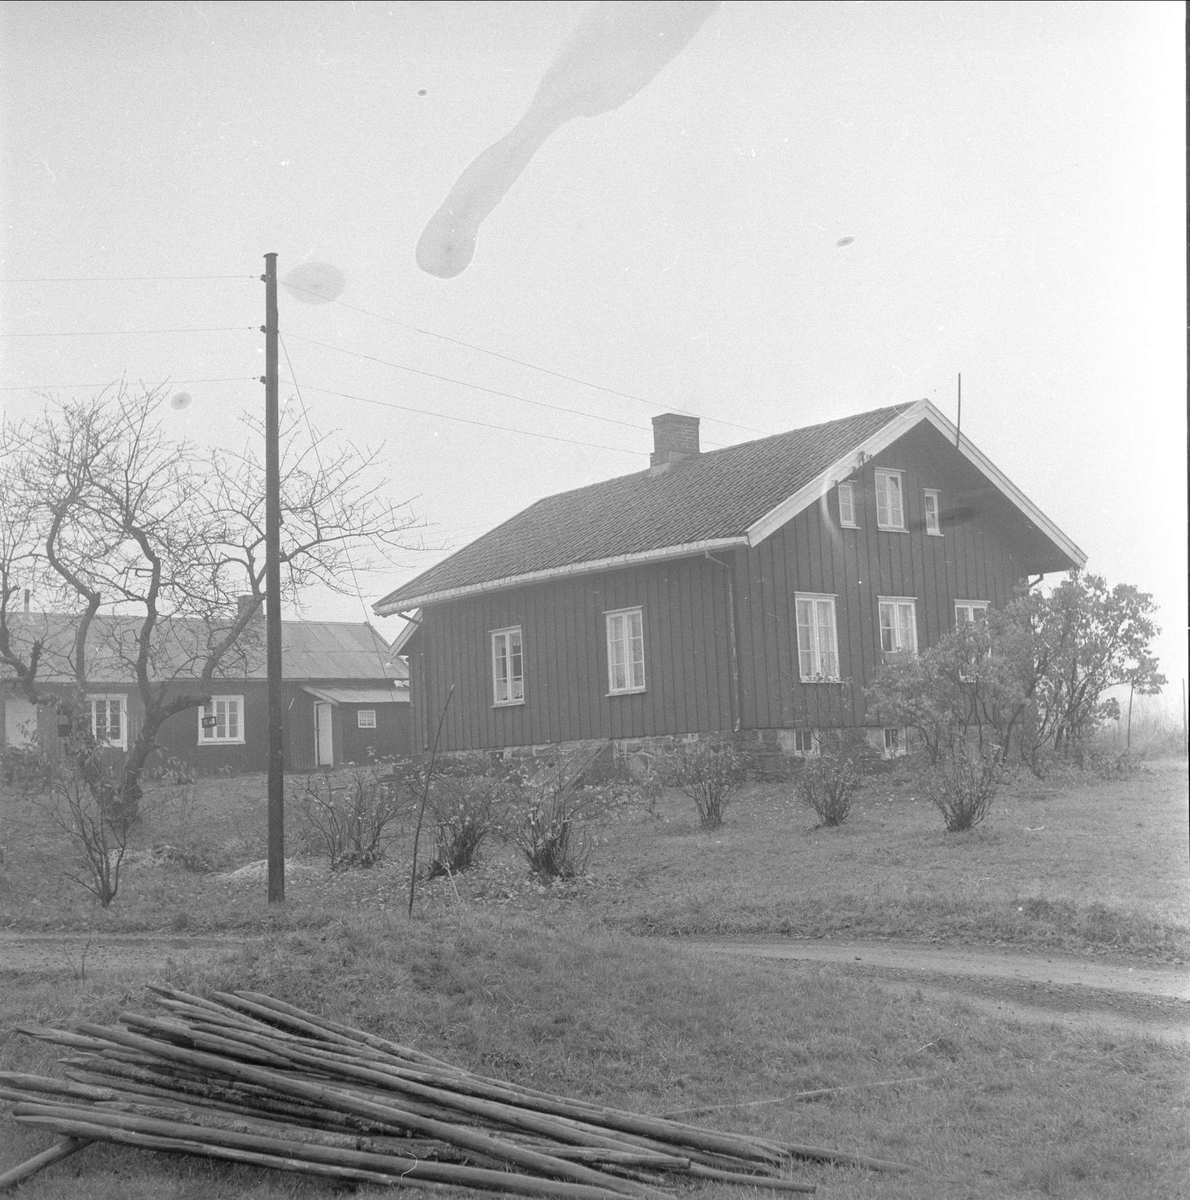  Øvre Rustan, Bærum, 08.11.1958. Bolig med hage.